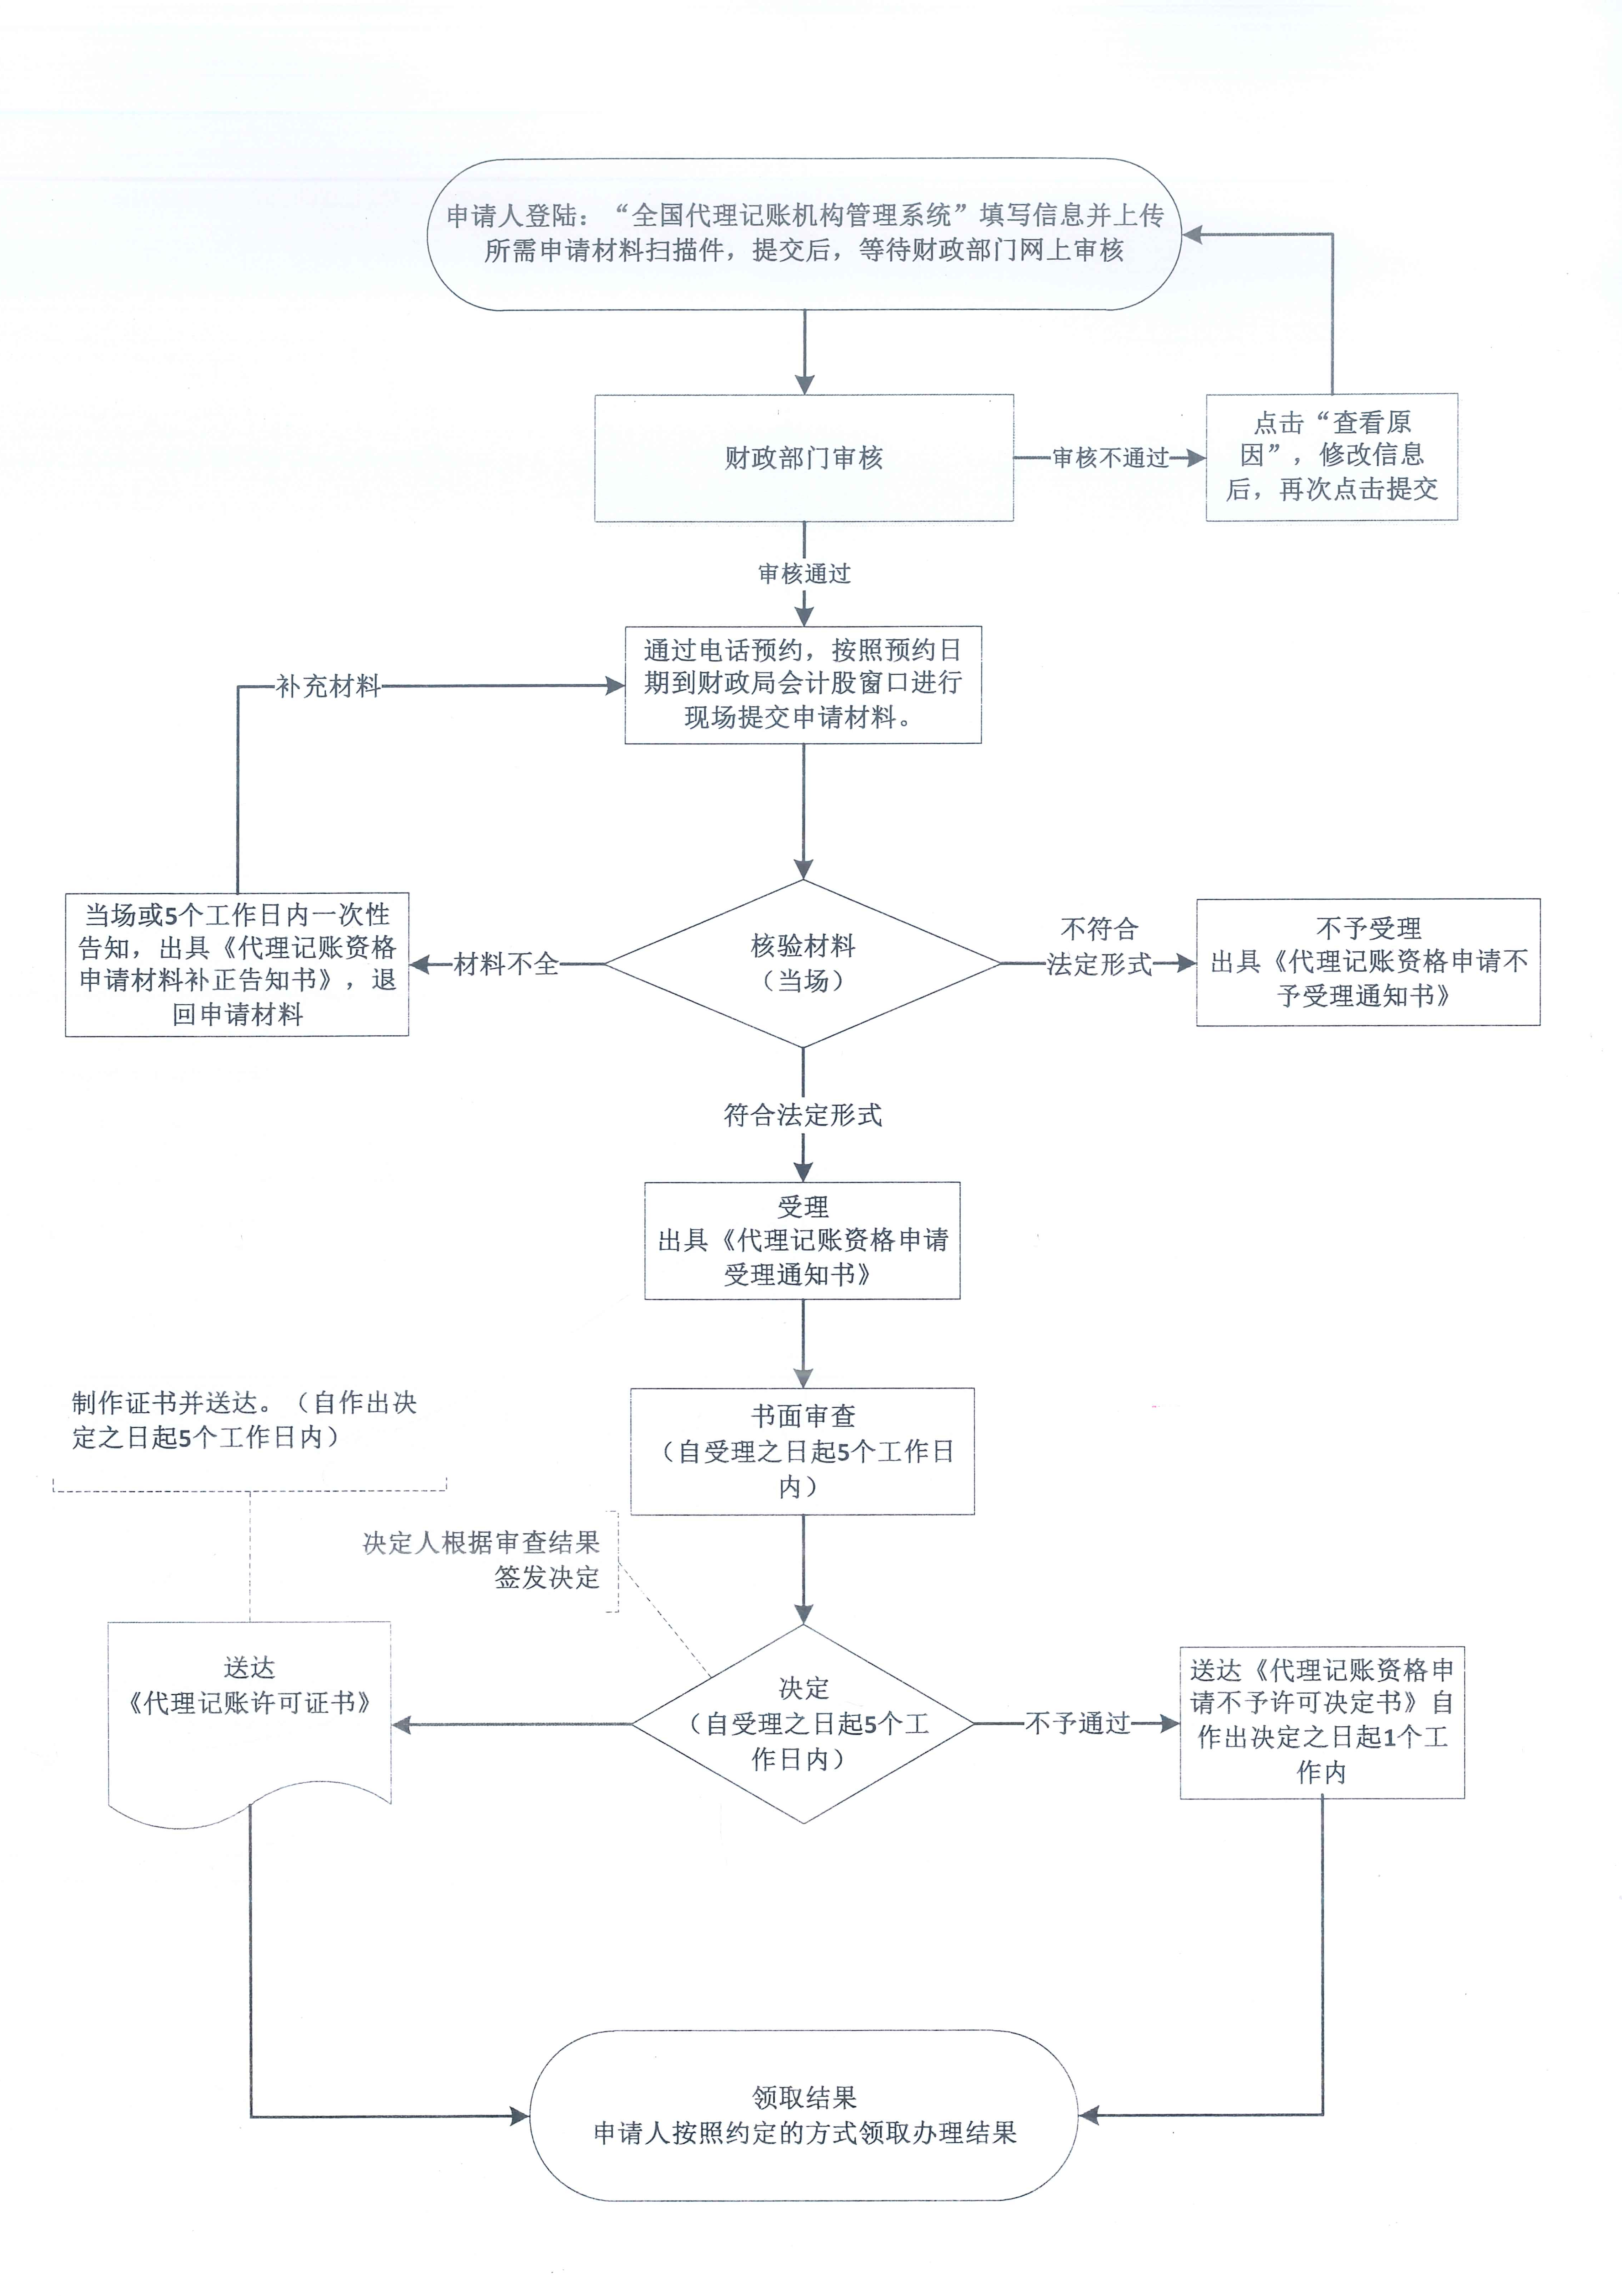 鹤山市财政局行政许可流程图.jpg